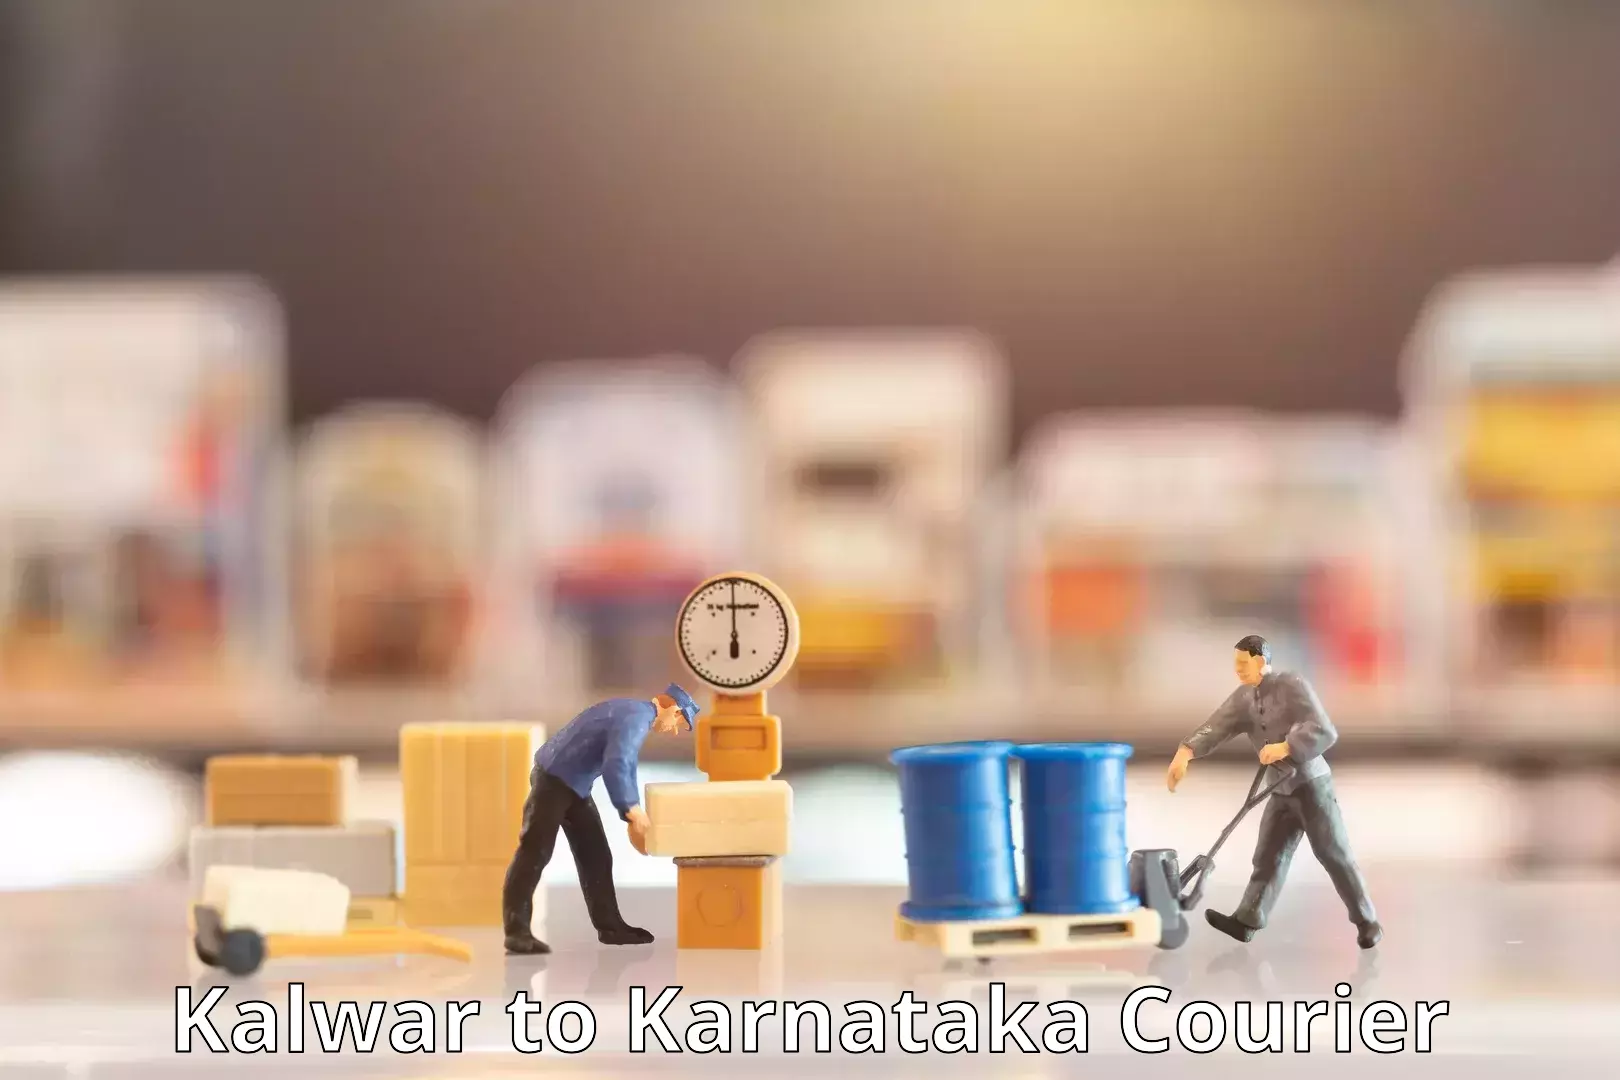 Nationwide shipping services Kalwar to Karnataka